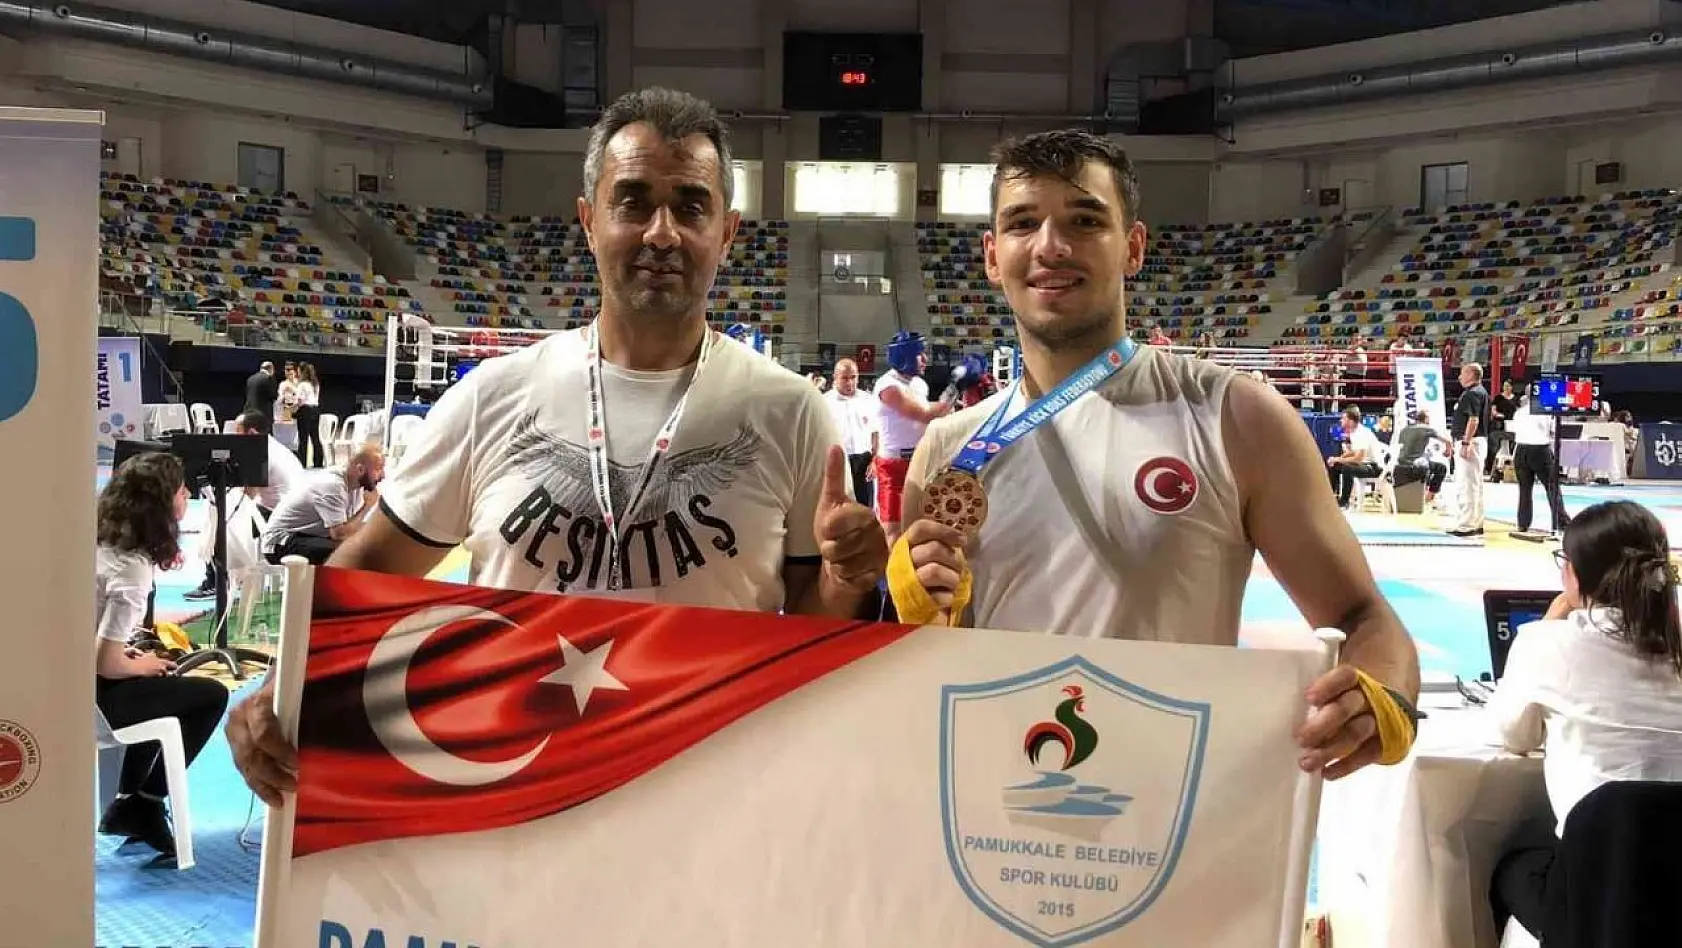 Pamukkaleli kick bokscu milli maçlar için İtalya'ya gidiyor